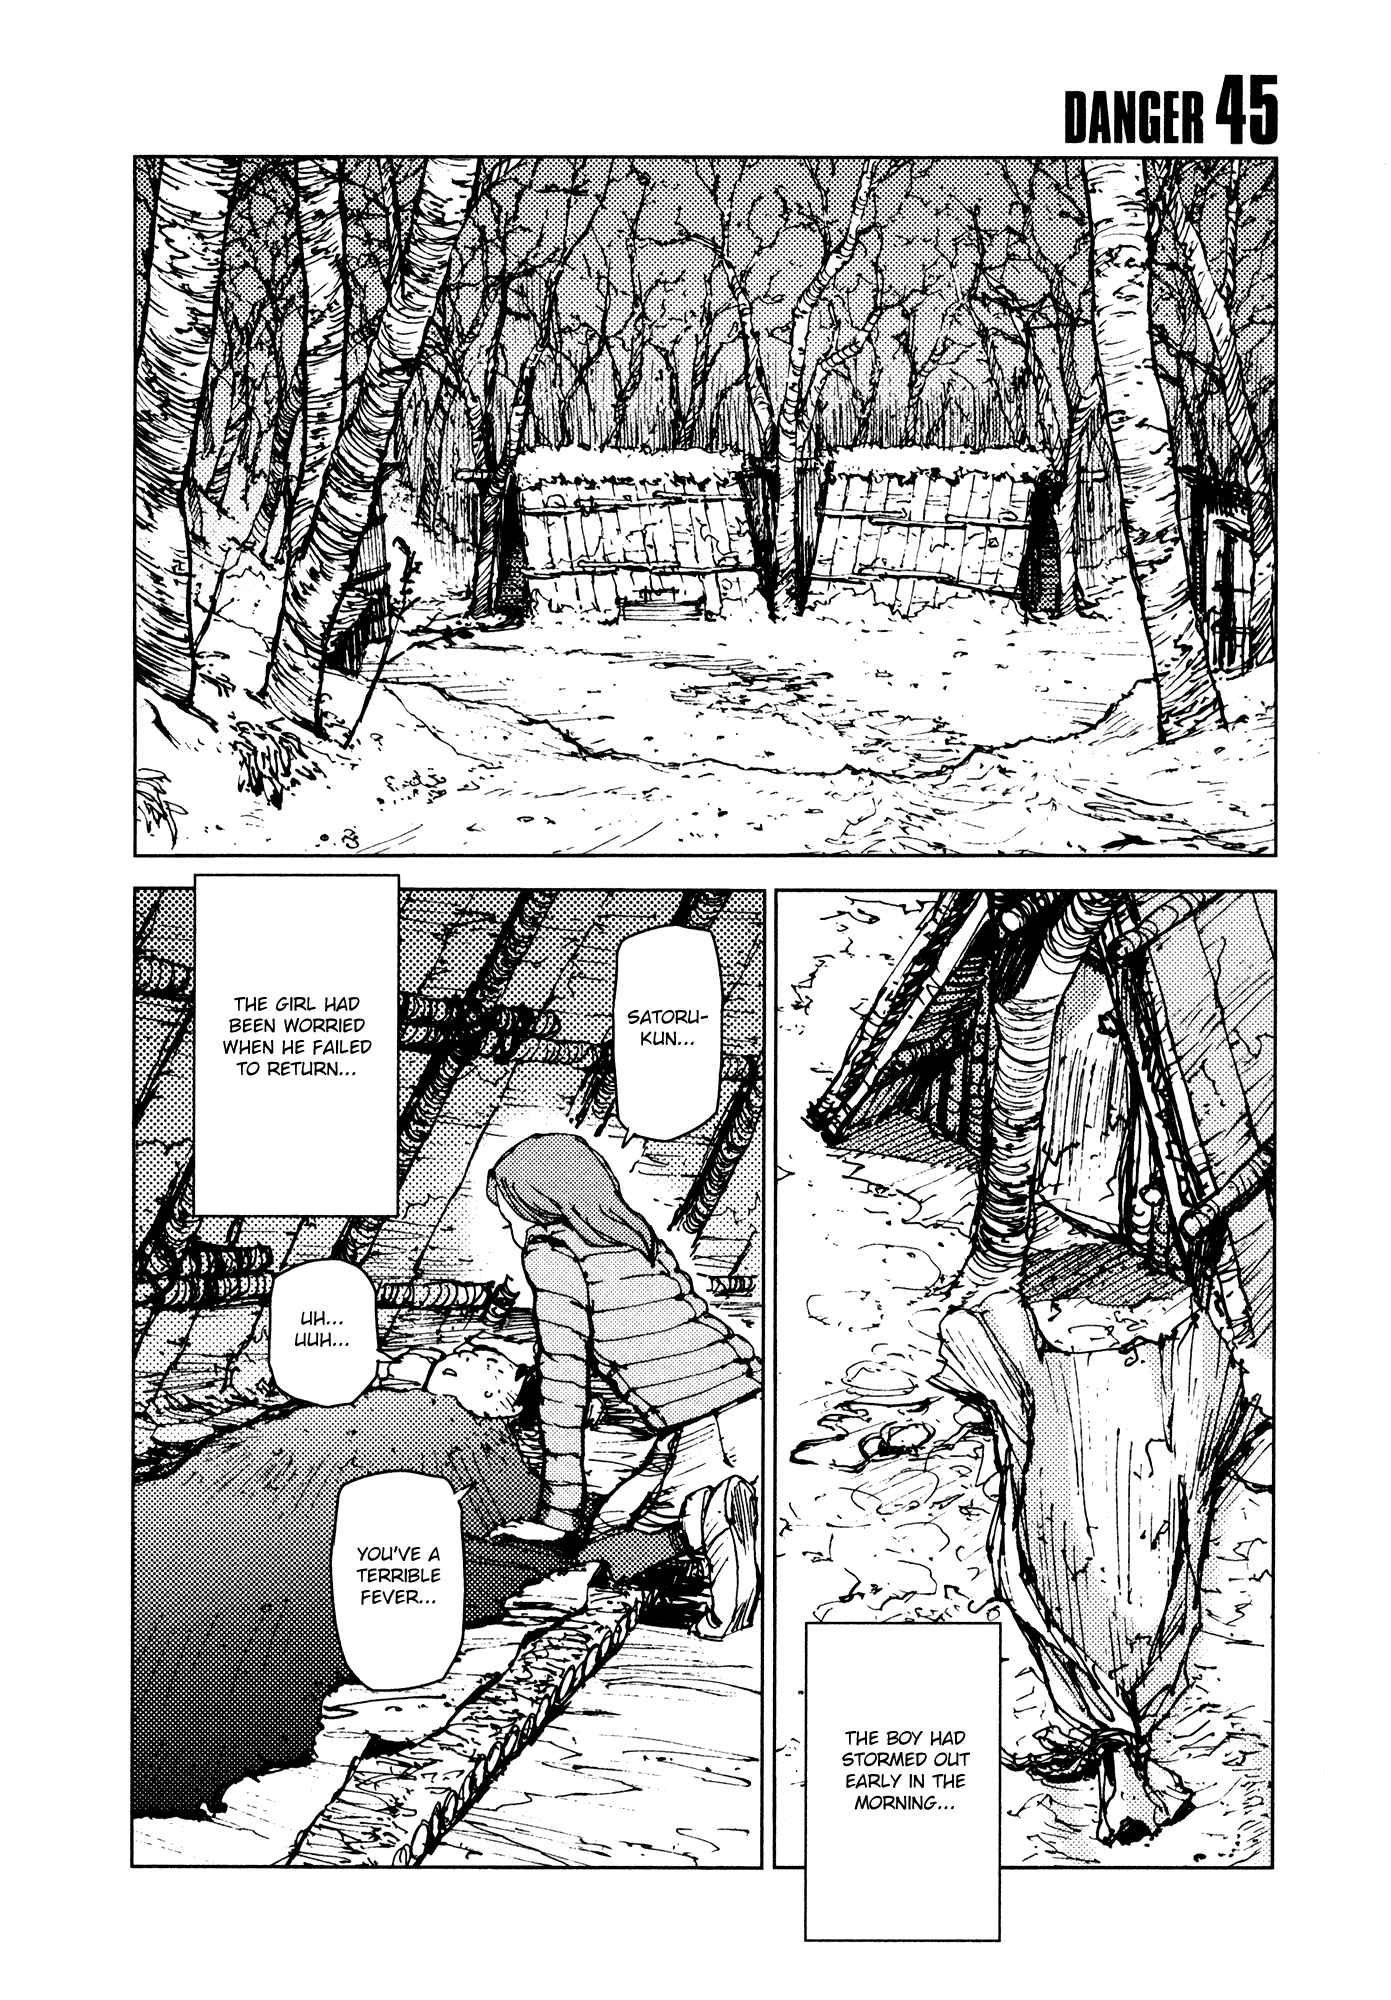 Survival: Shounen S no Kiroku Vol.3 Ch.45